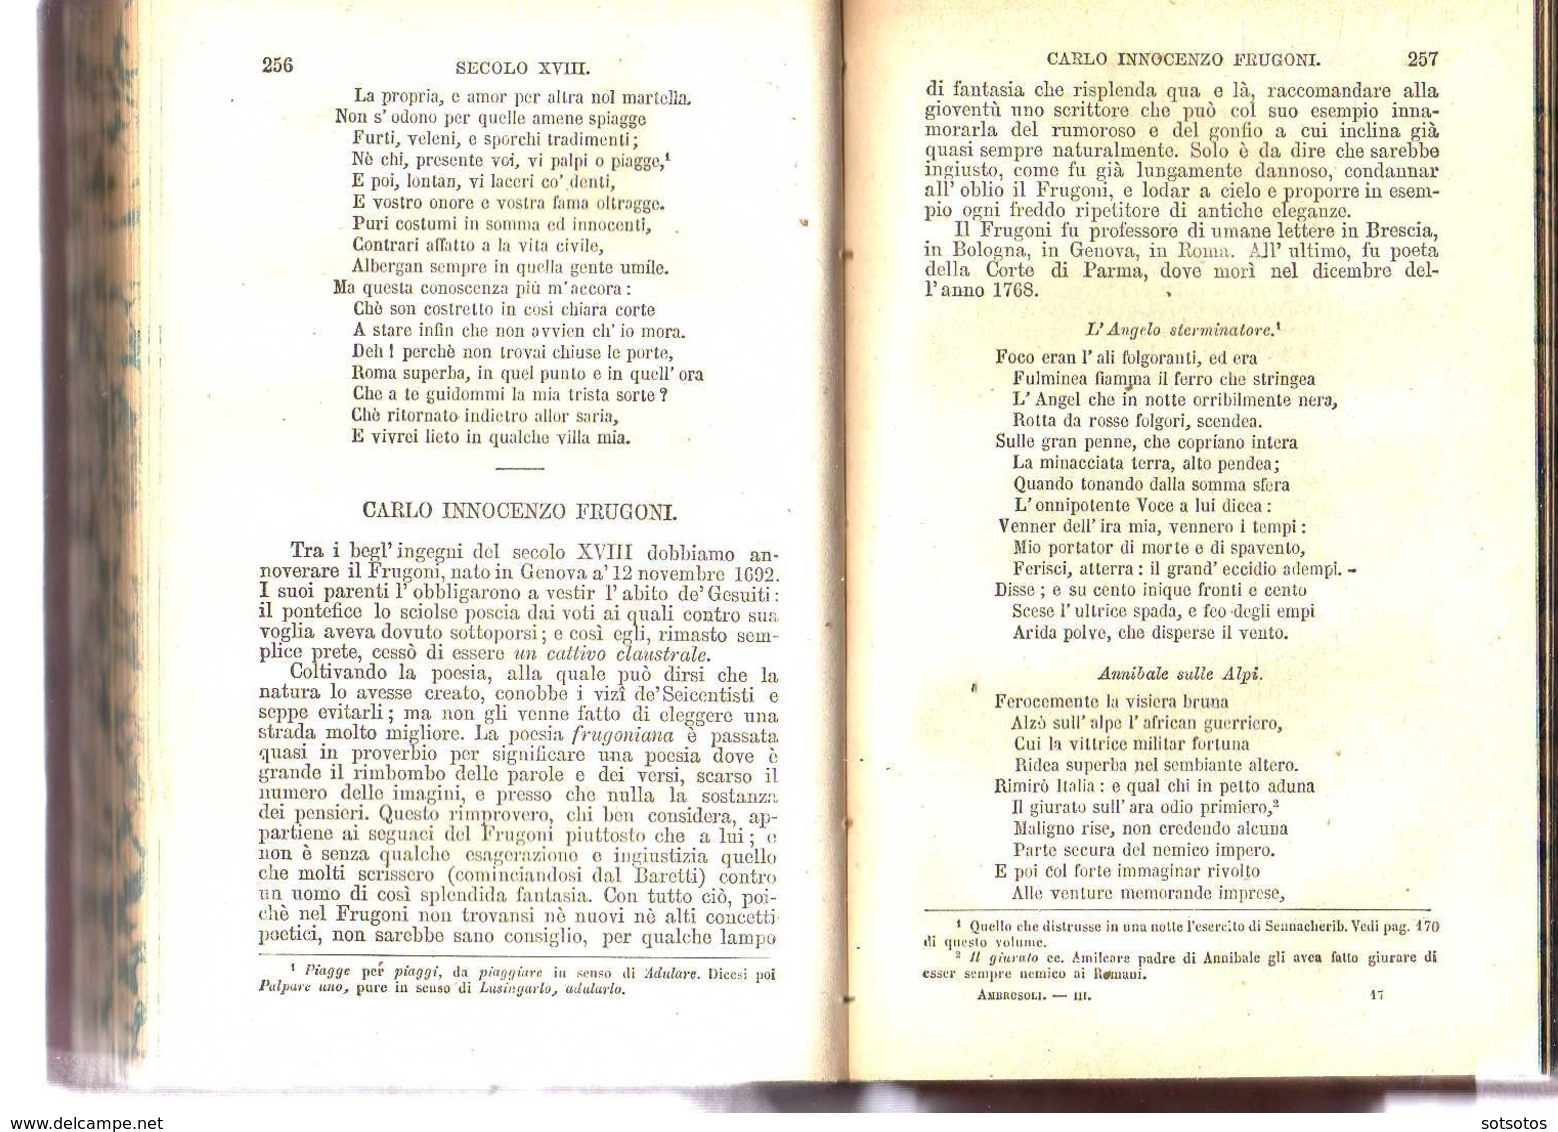 MANUALE della LETTERATURA ITALIANA compilato da Francesco ambrosoli, Vol III -  FIRENZE, G. BARBERA, Editore 1872 - 453